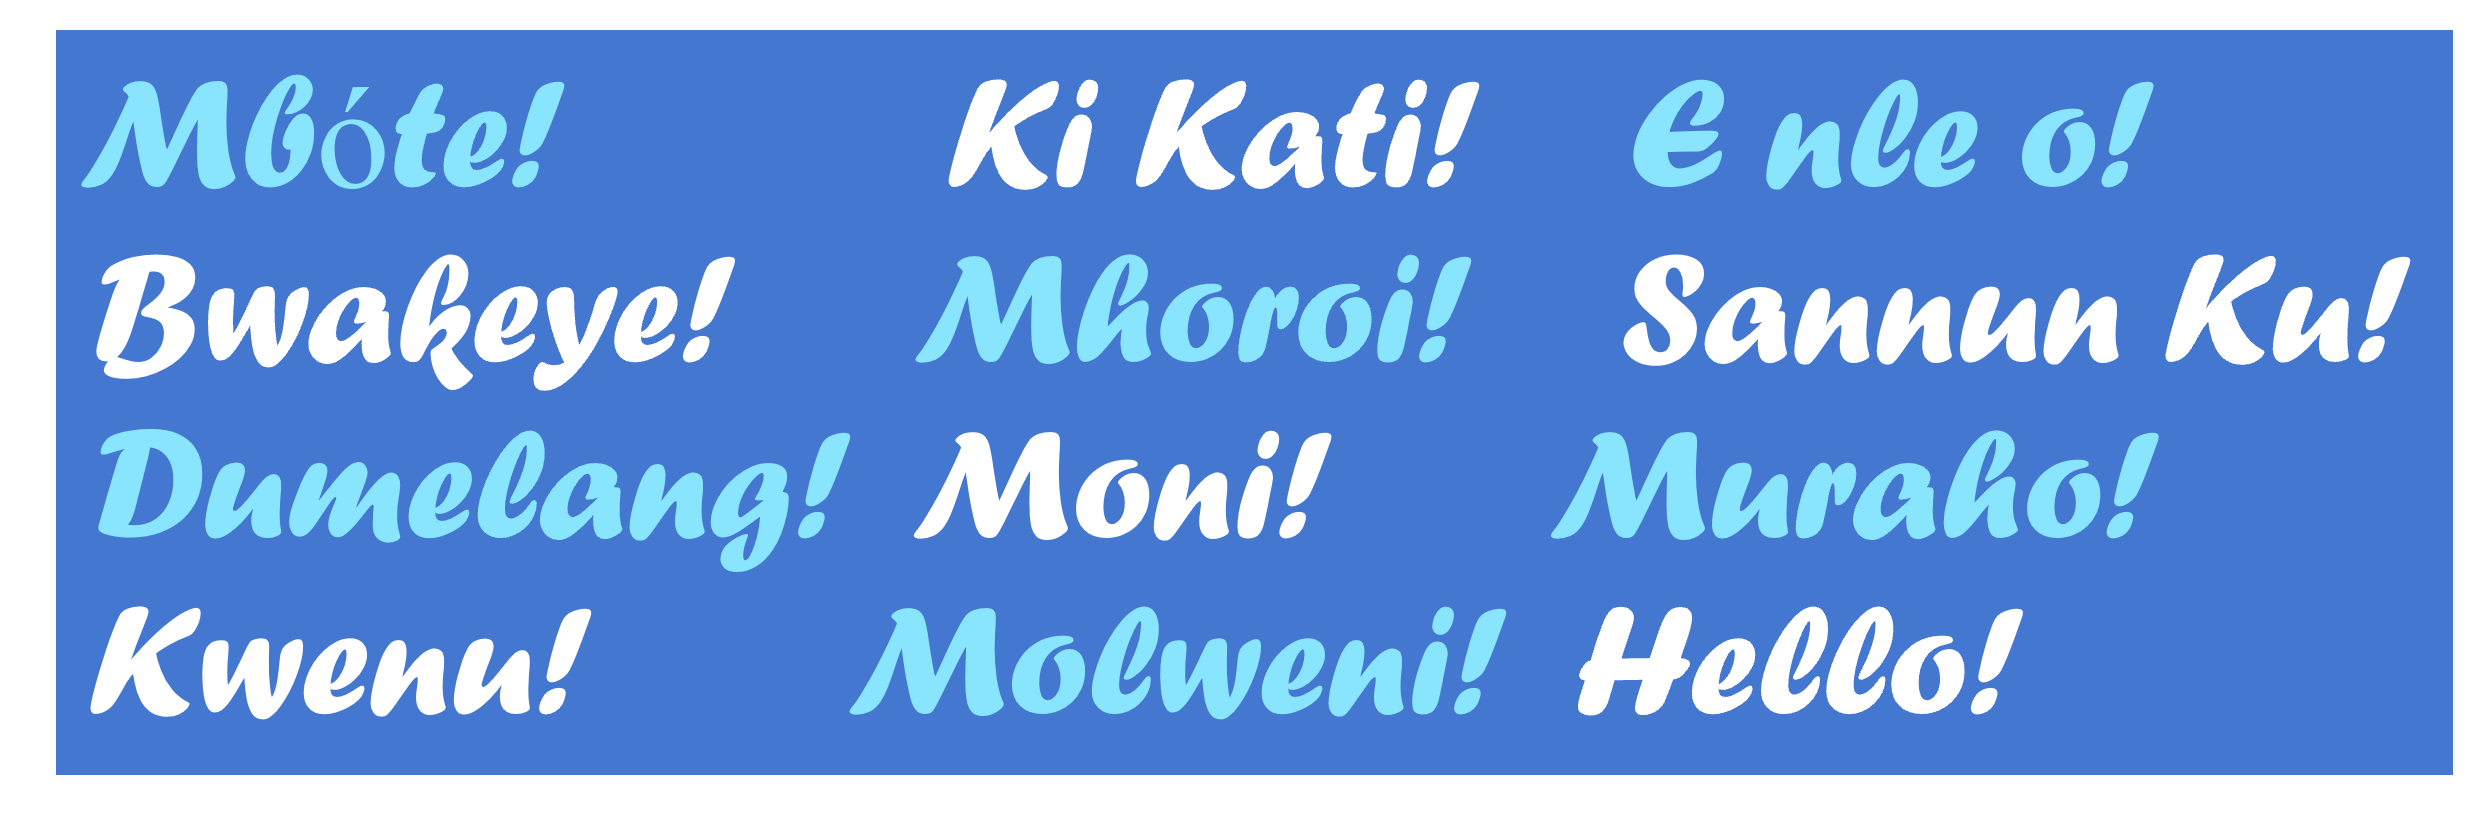 A imagem mostra a frase inglesa "Hello" e a sua tradução para o conjunto de línguas africanas descritas neste post do blog.